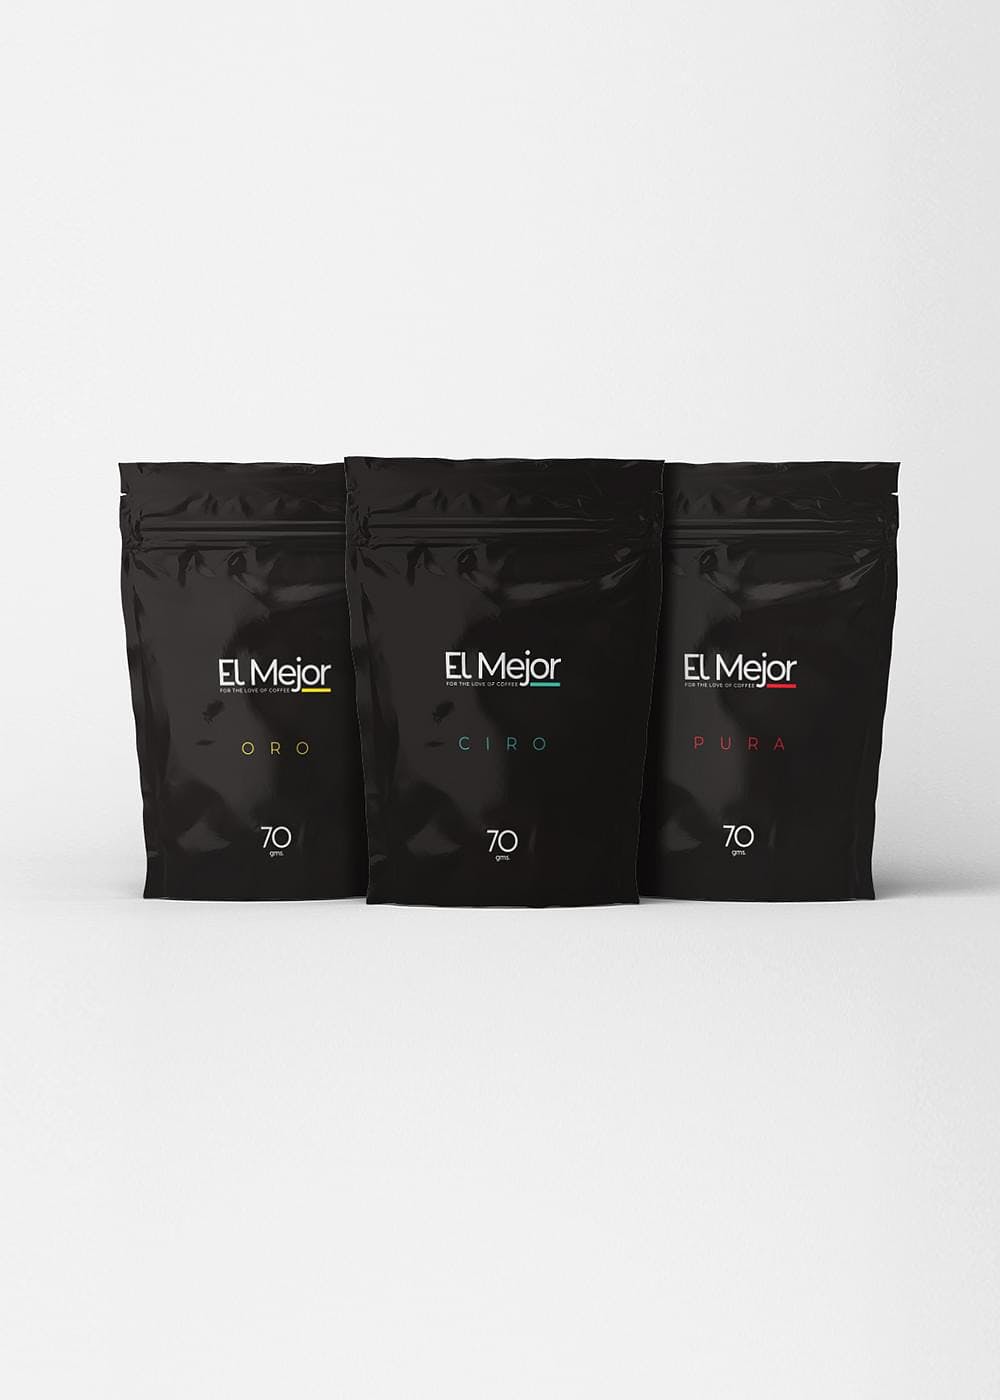 Sample Coffee Pack - Pack of 3